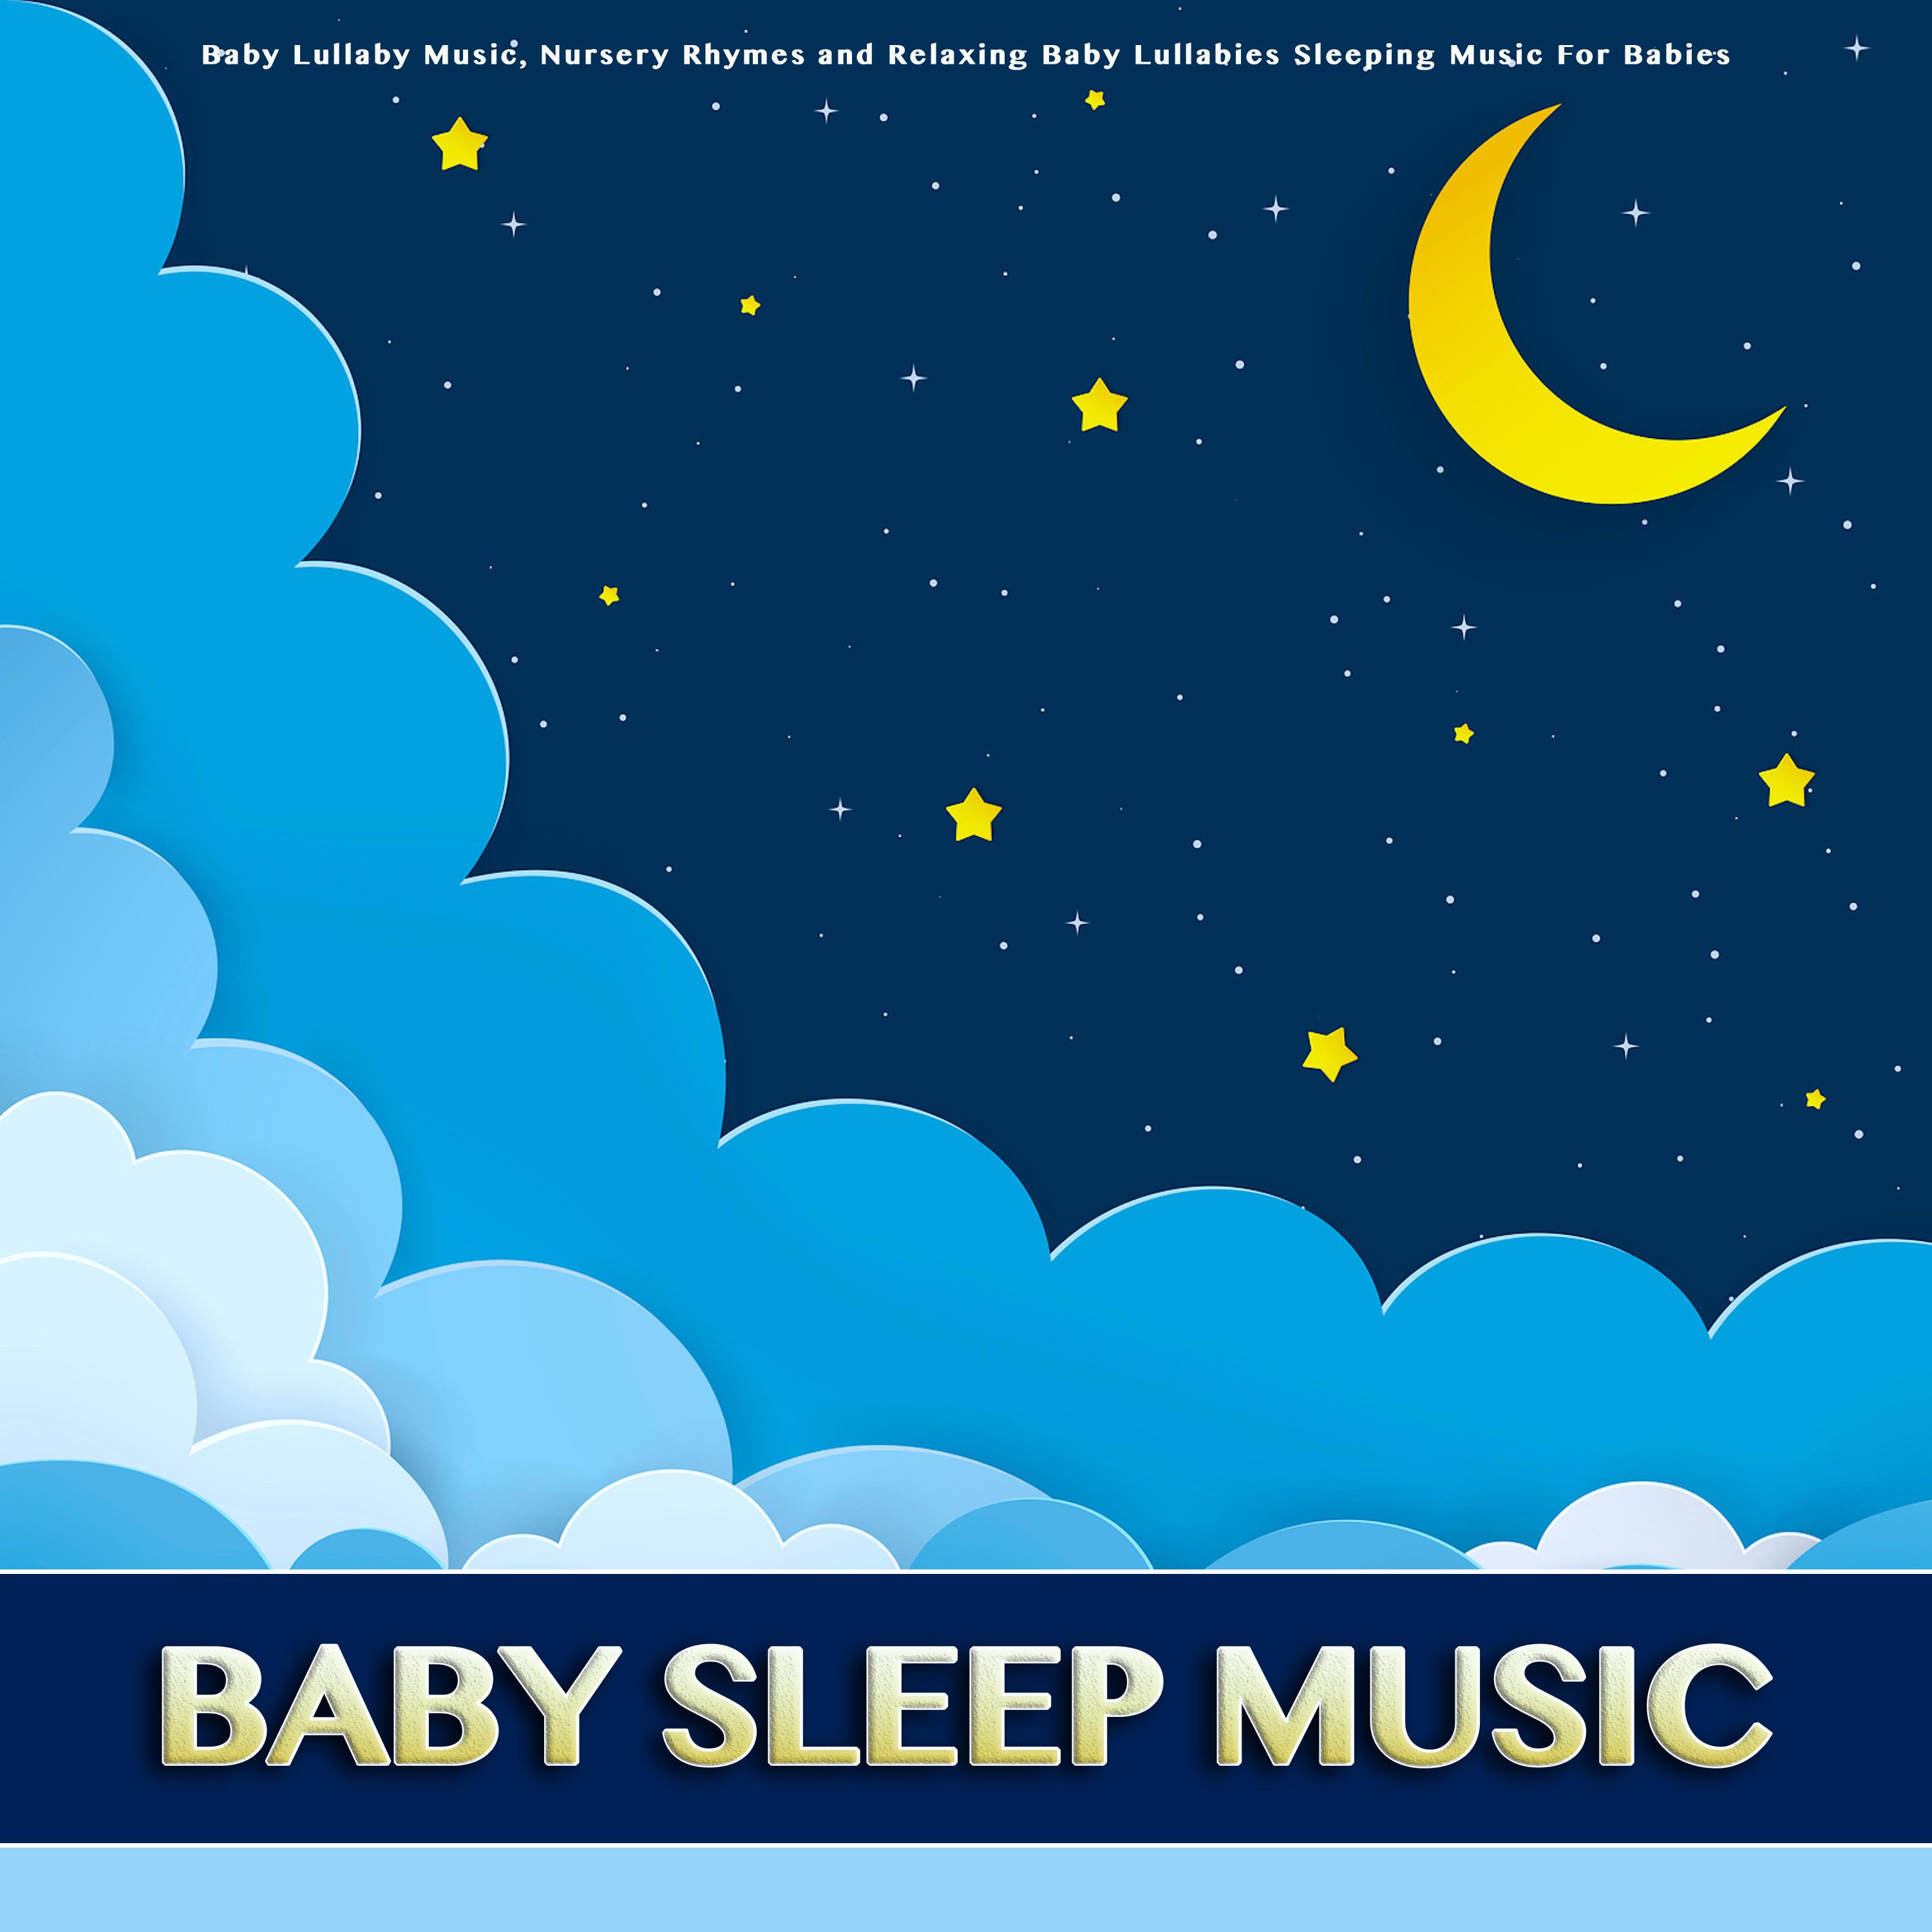 Rock A Bye Baby - Baby Sleep Music - Baby Lullabies - Nursery Rhymes